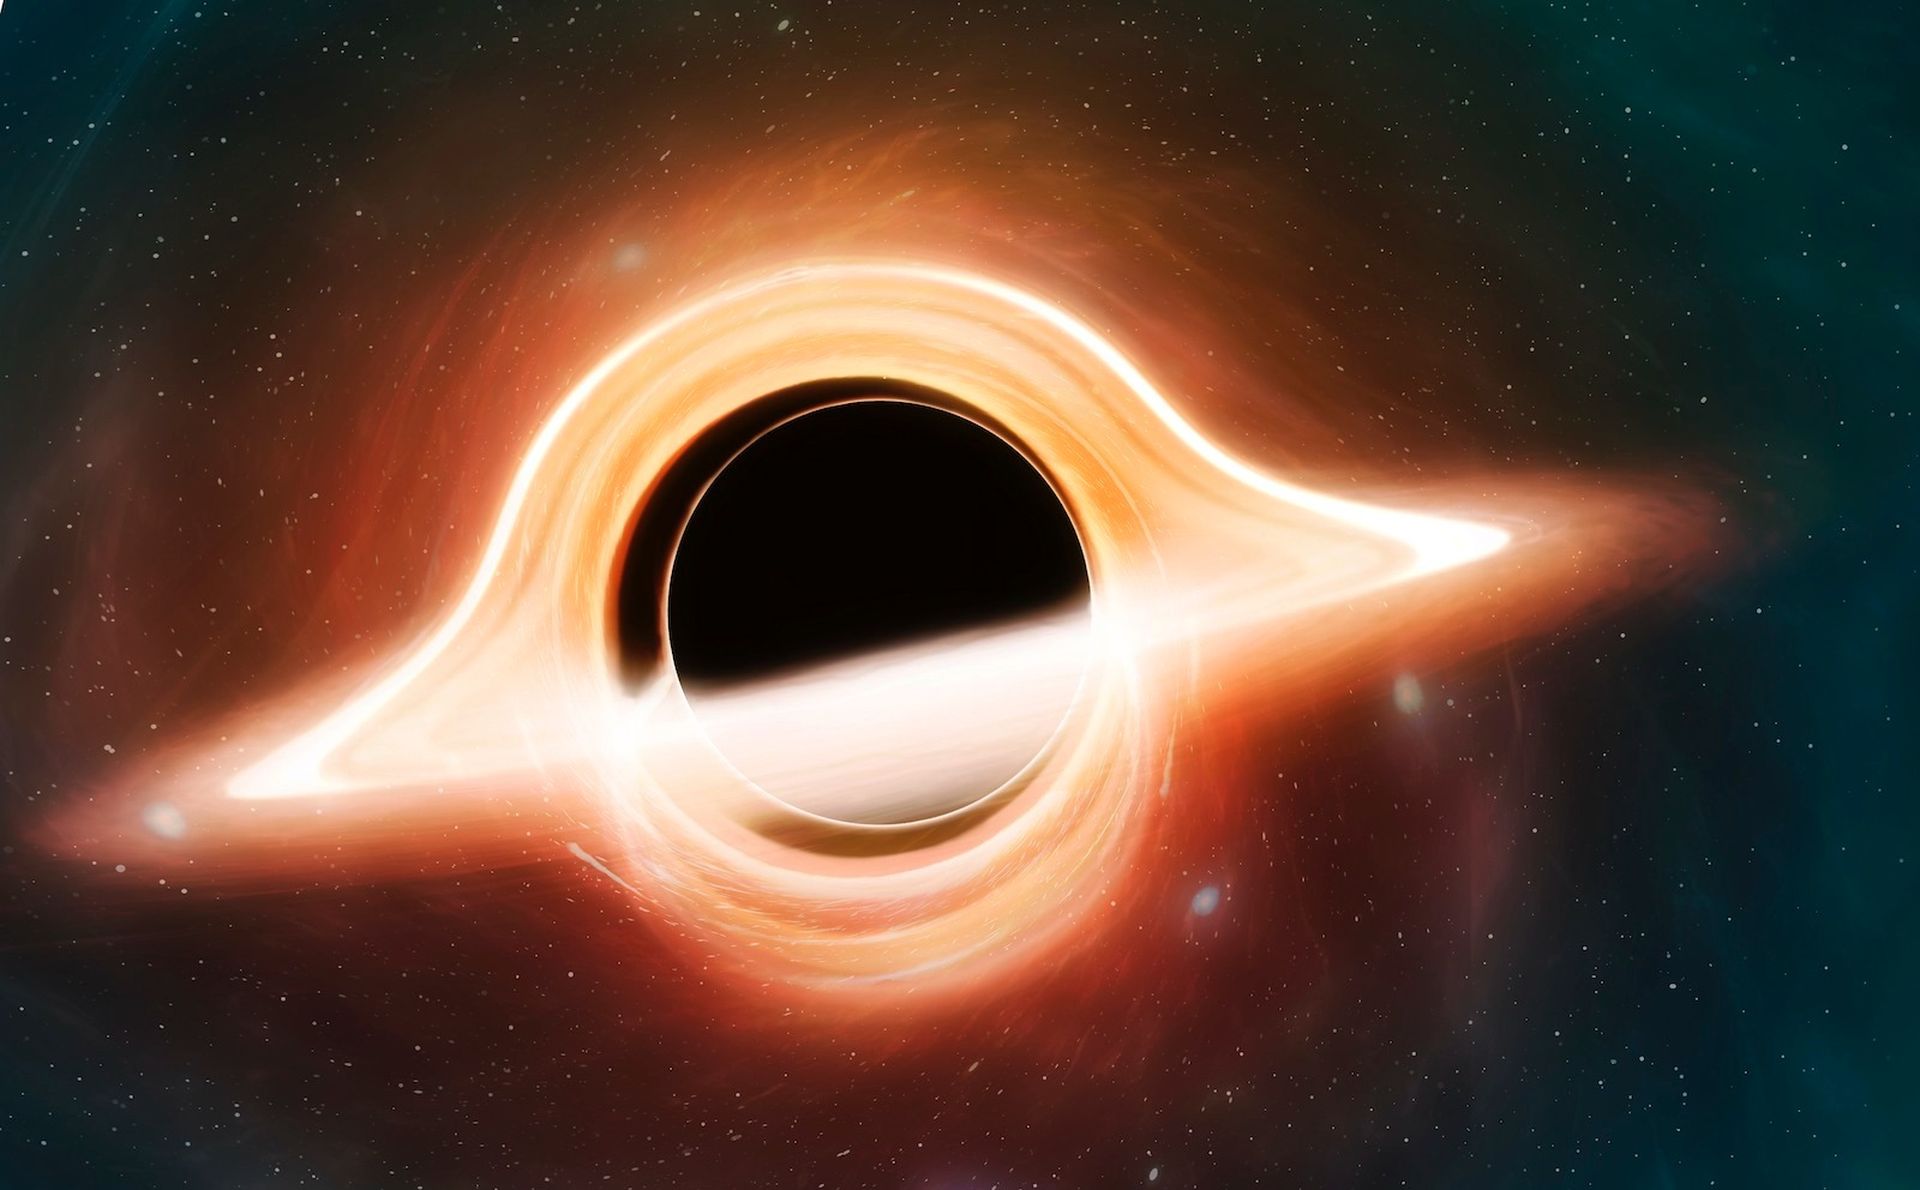 Les scientifiques ont réussi à imaginer le Sagittaire A*, un trou noir supermassif qui vit au centre de notre galaxie, la Voie lactée.  C'est un trou noir stupéfiant, quatre millions de fois la masse de notre Soleil.